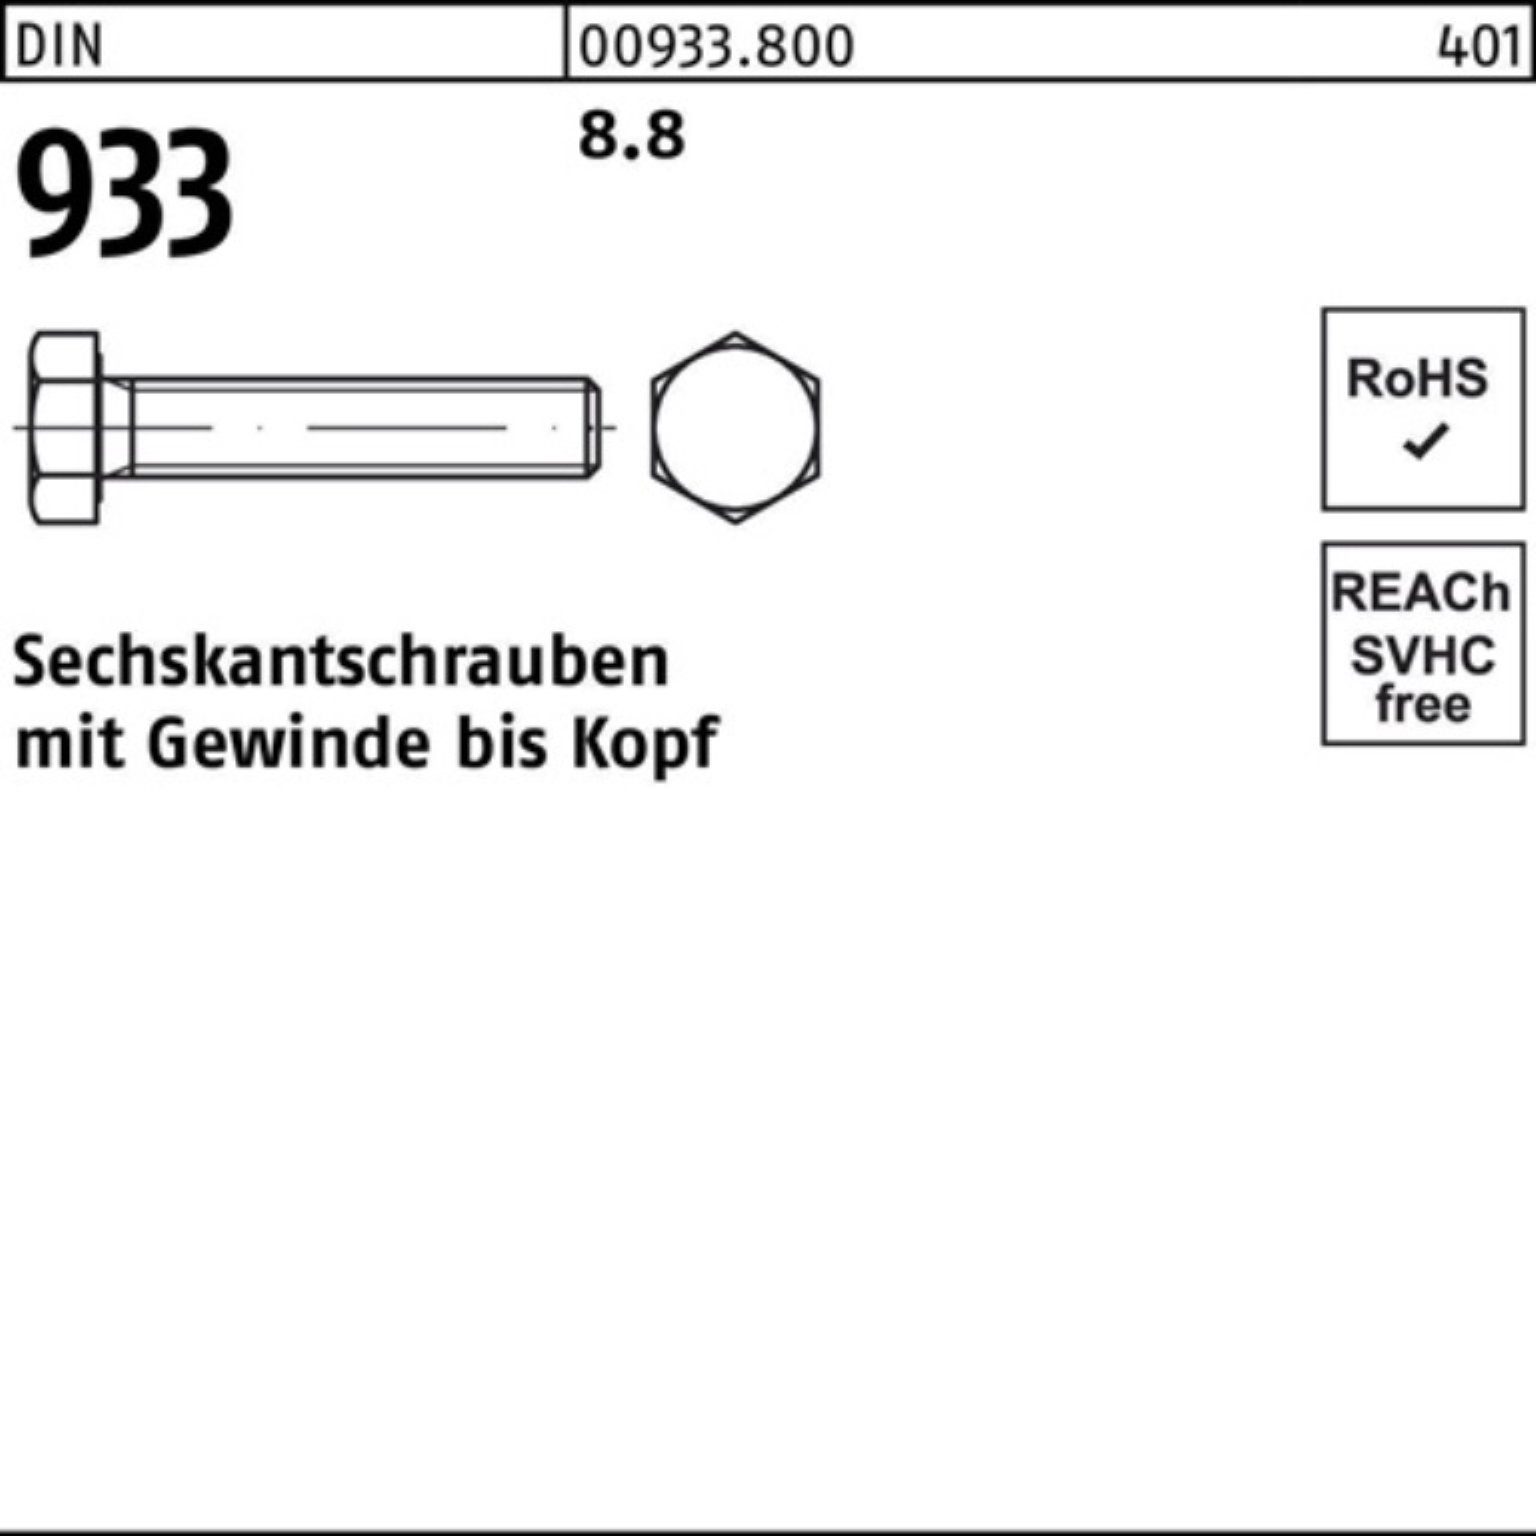 933 100 933 M27x DIN 100er Sechskantschraube VG 1 8.8 Pack Stück Sechskantschraube Reyher DIN